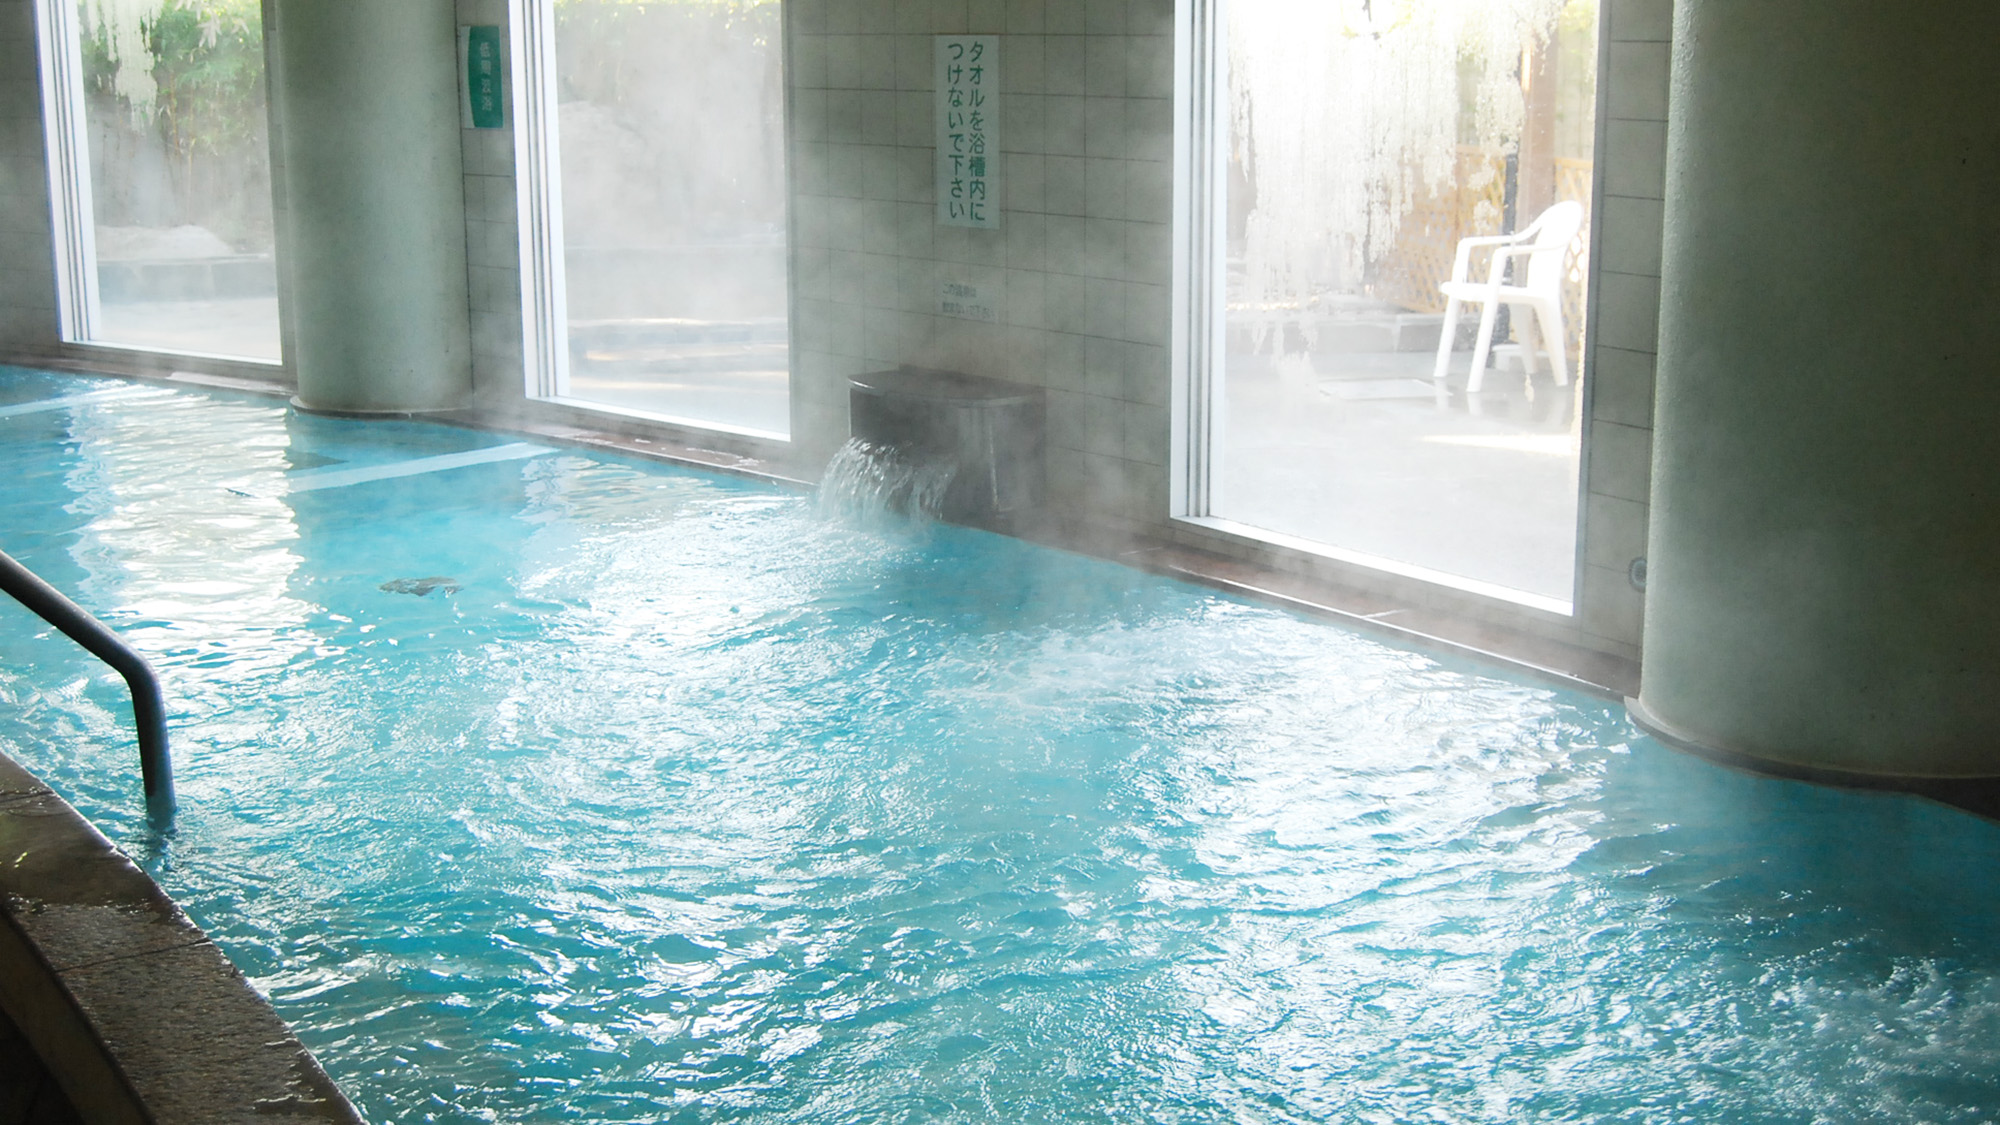 【大浴場/七城温泉ドーム】東浴・西浴と男女日替わりで楽しめるバラエティに富んだお風呂が人気。